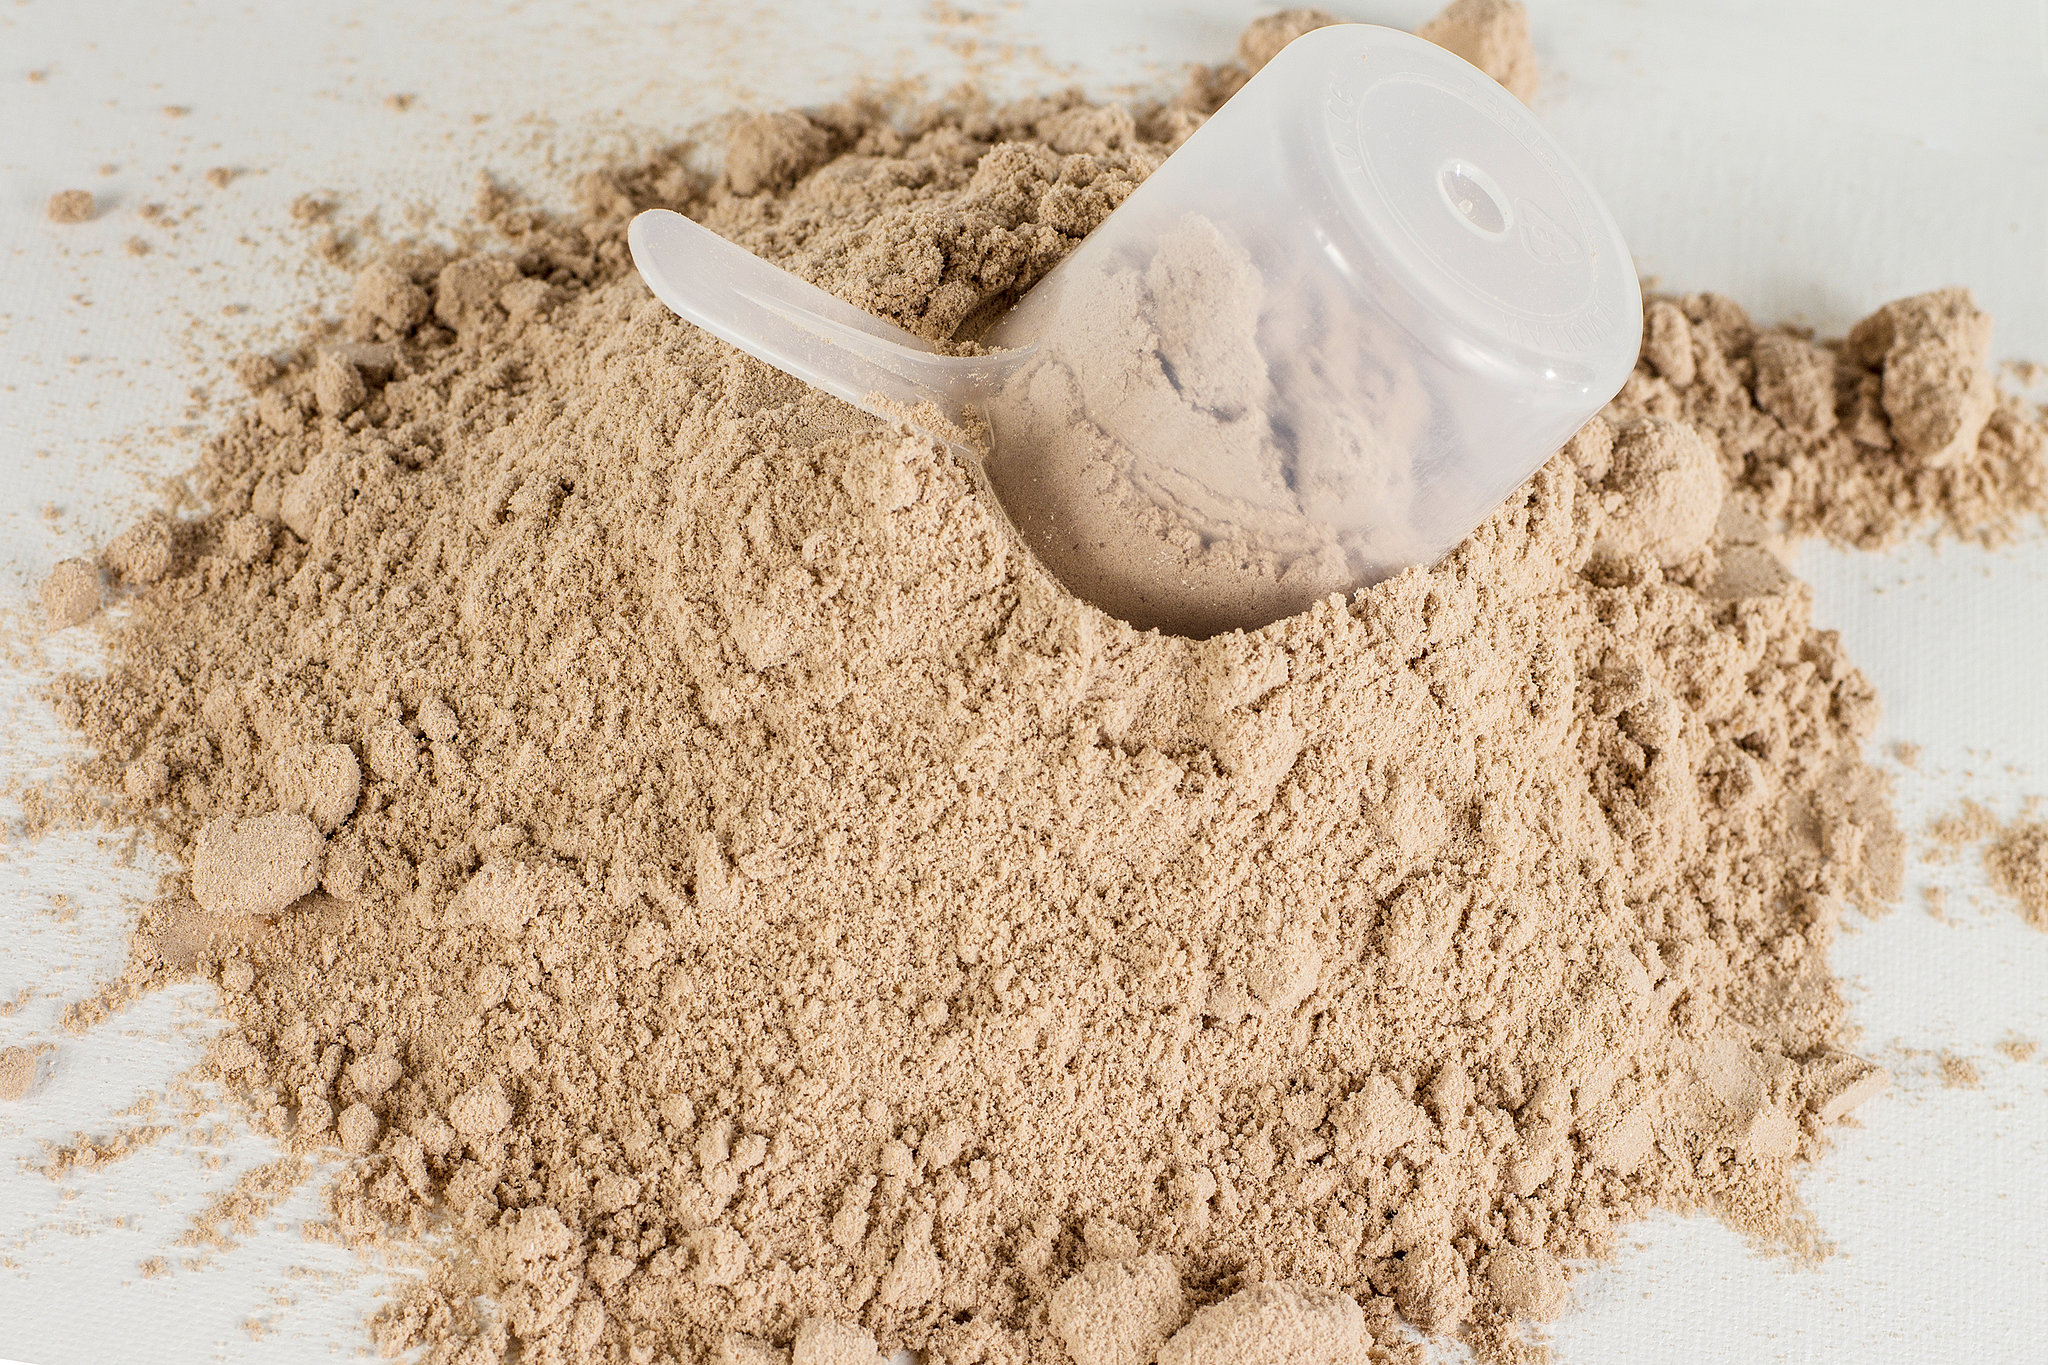 Protein Powder | 10 Foods Every Healthy Kitchen Needs | POPSUGAR ...